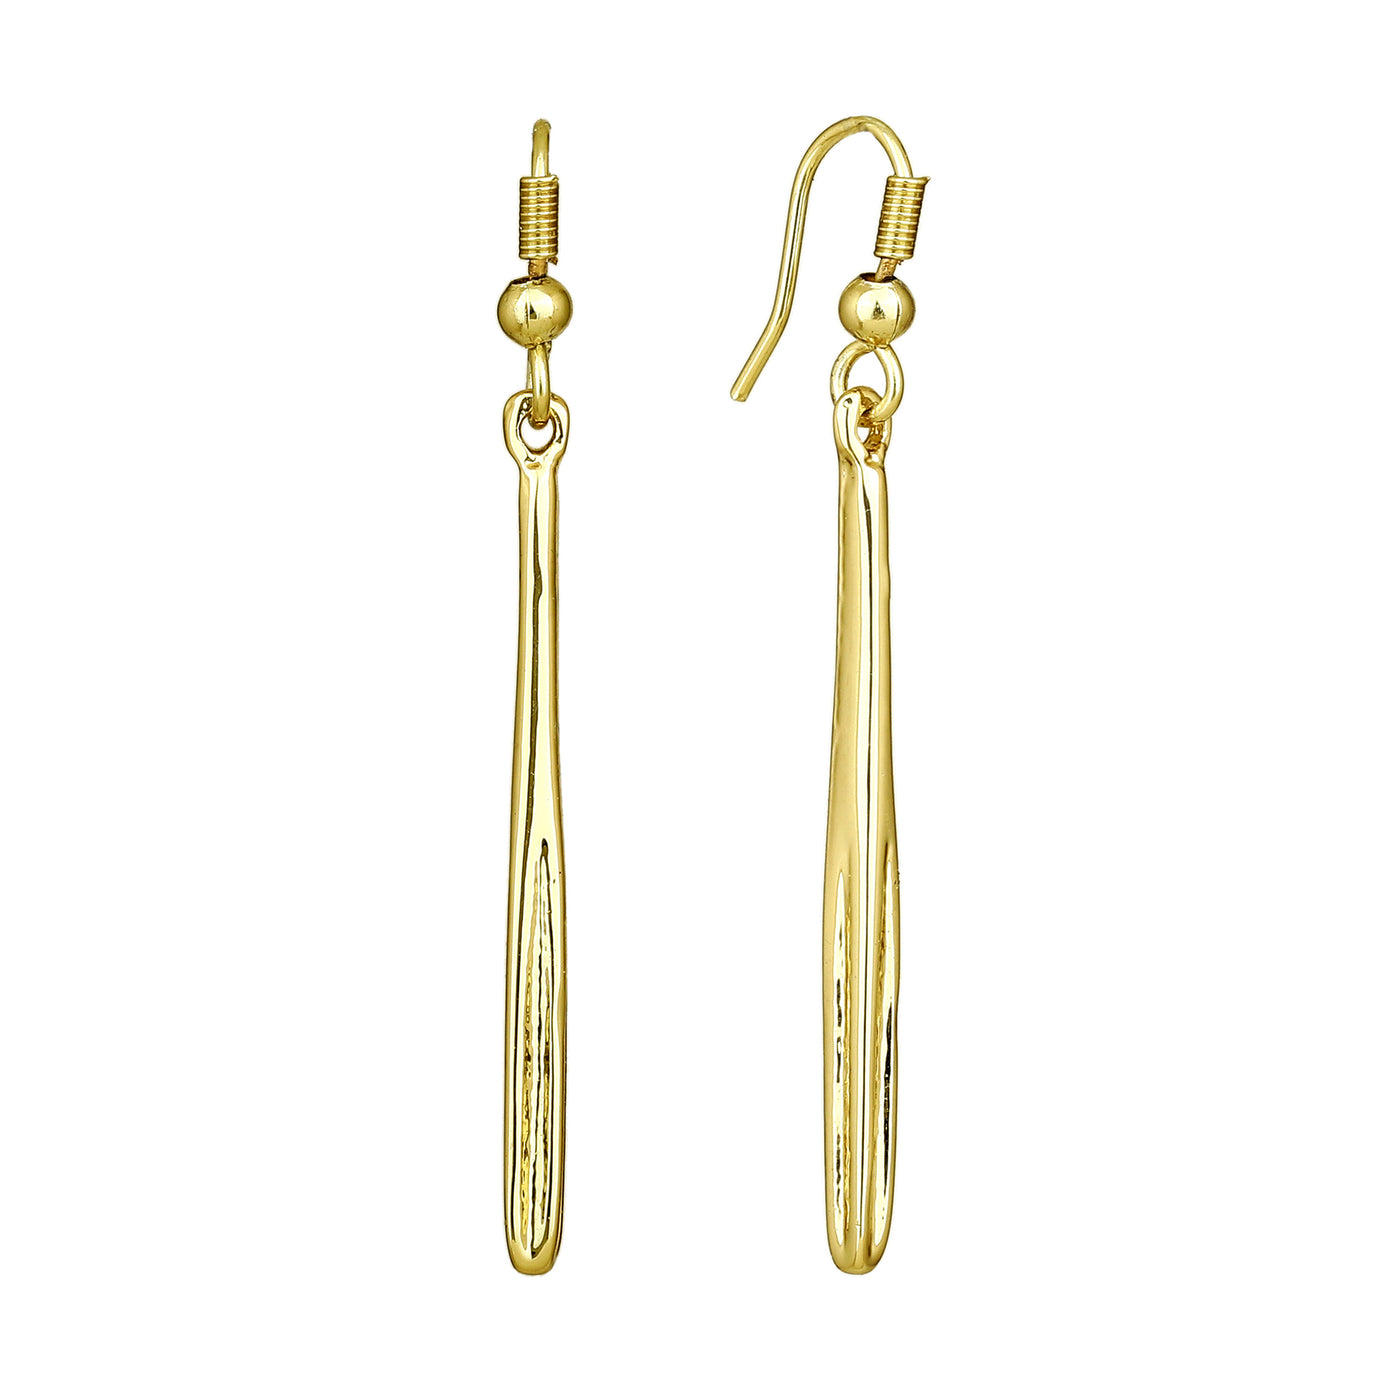 Estele 24 Kt Gold Plated Wicket Dangle Earrings for women